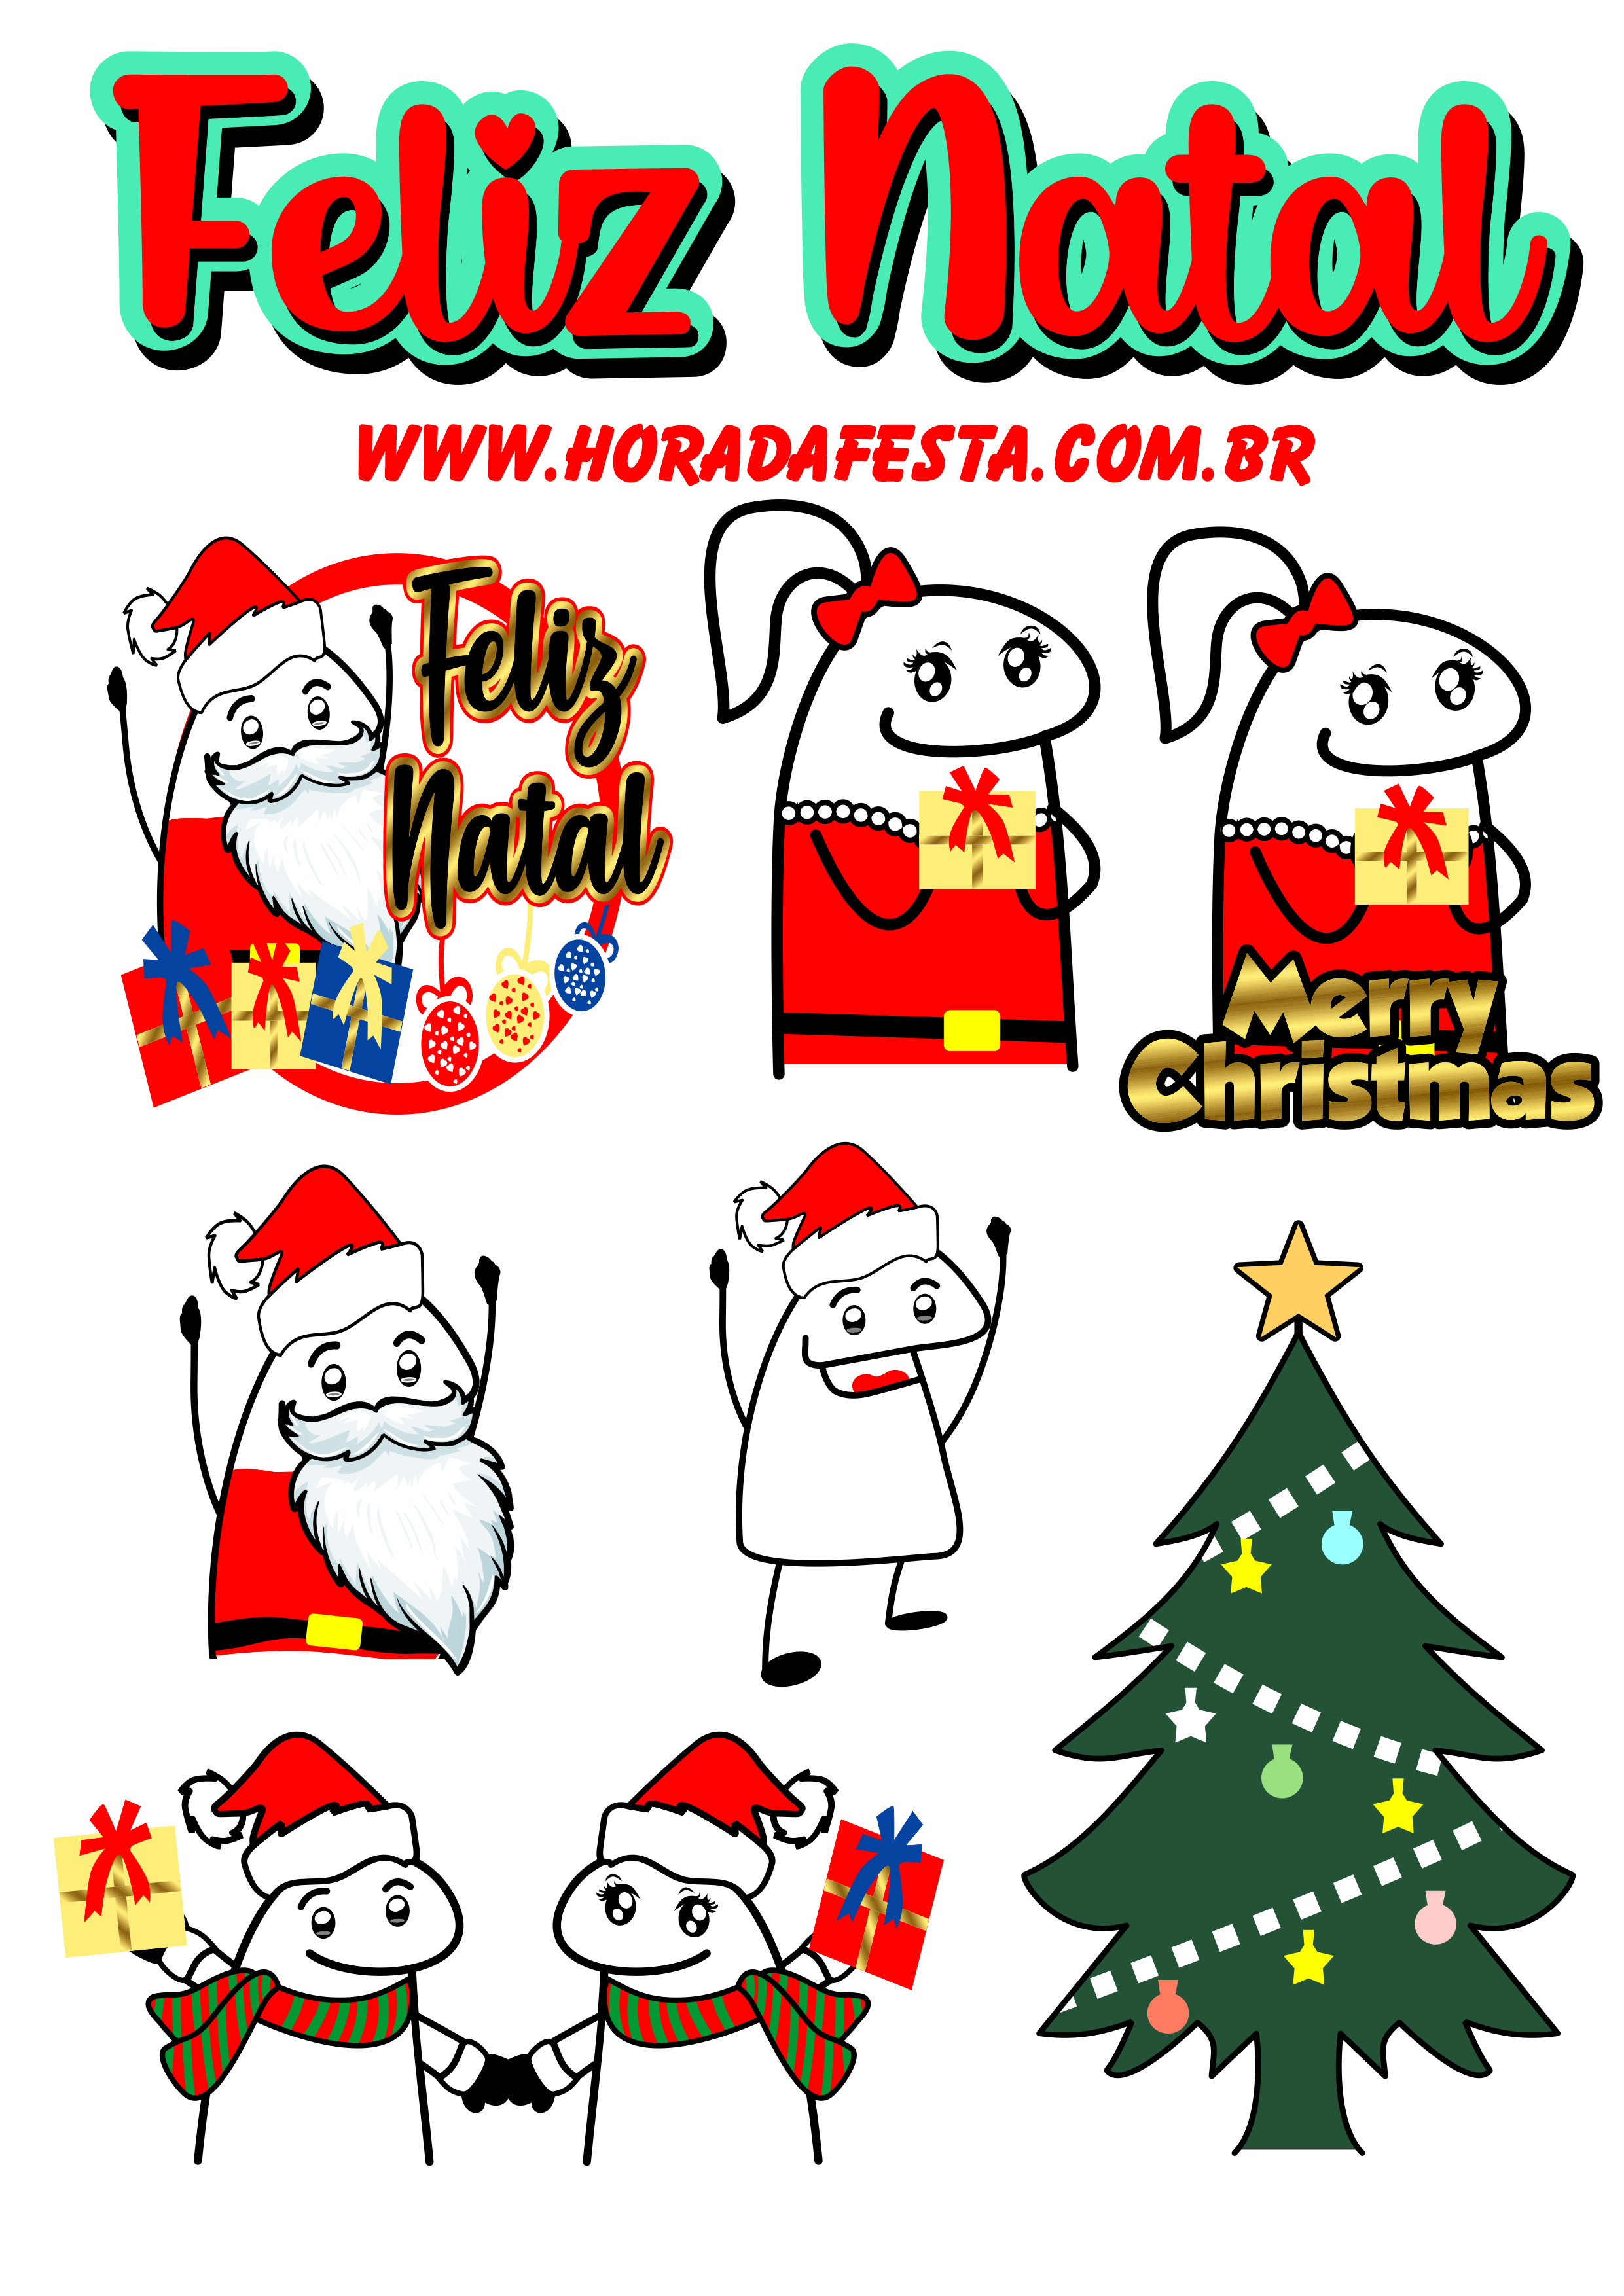 Feliz Natal figurinhas engraçadas para whatsapp flork of cows presente merry christmas papai noel boas festas árvore de natal png